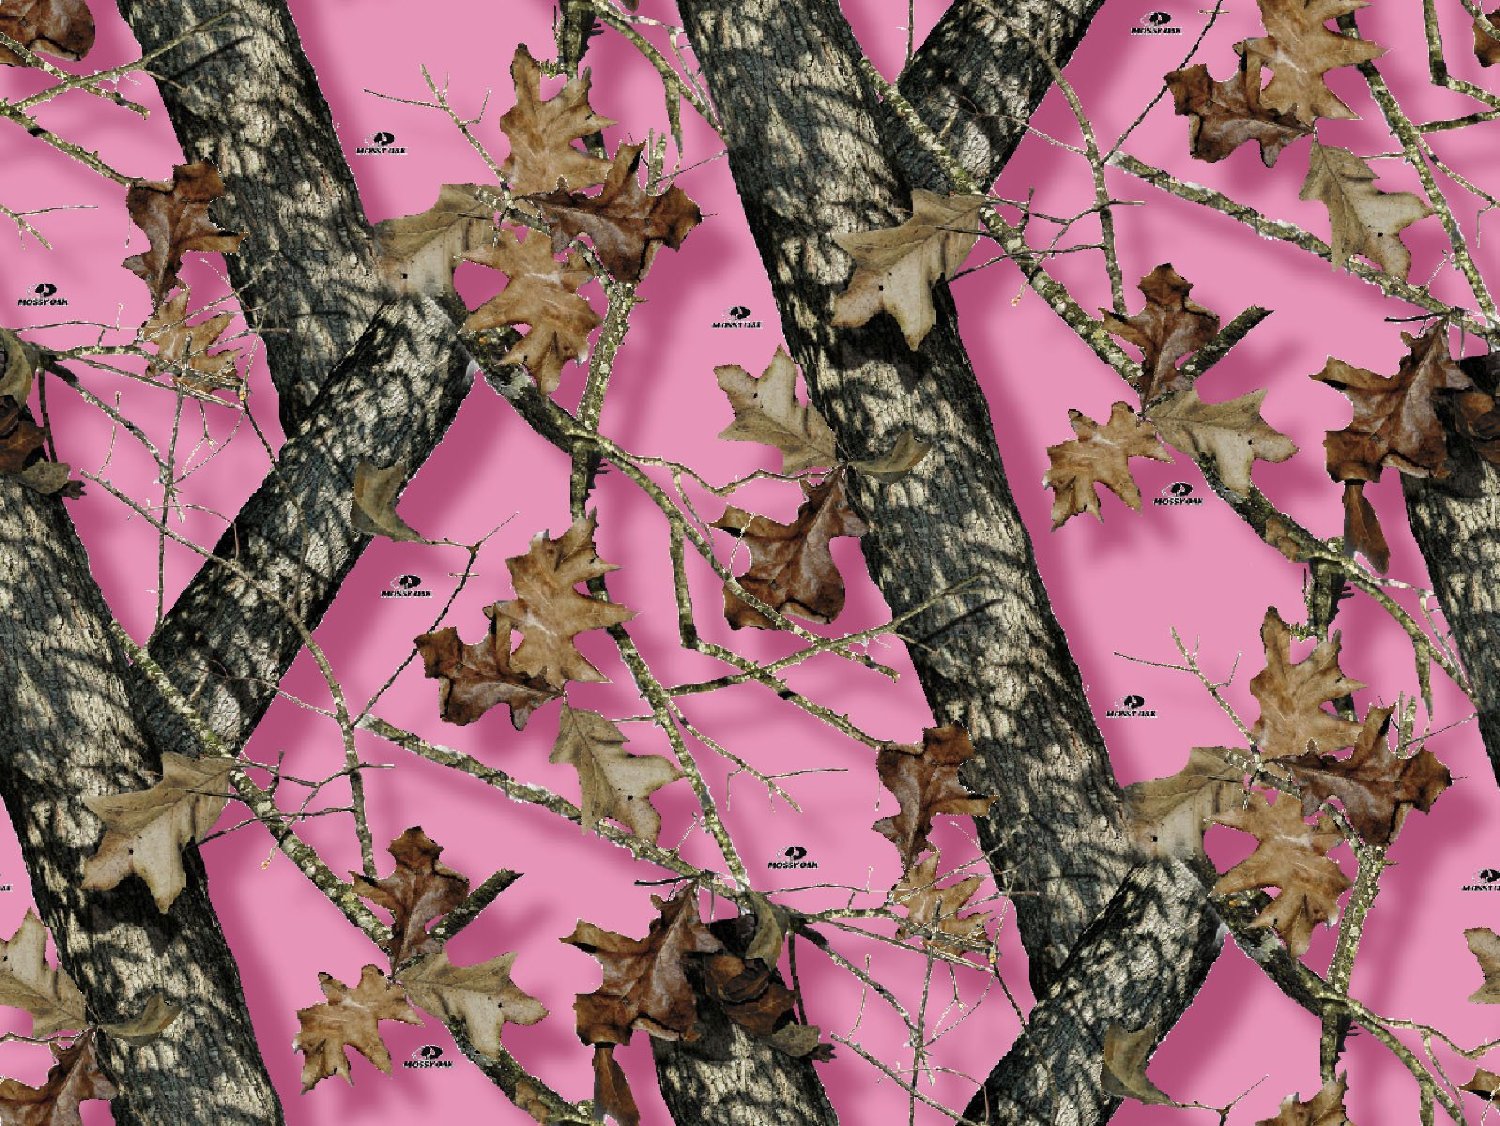 Pink Mossy Oak Desktop Wallpaper 91YDX4rlo8L SL1500 jpg 1500x1126